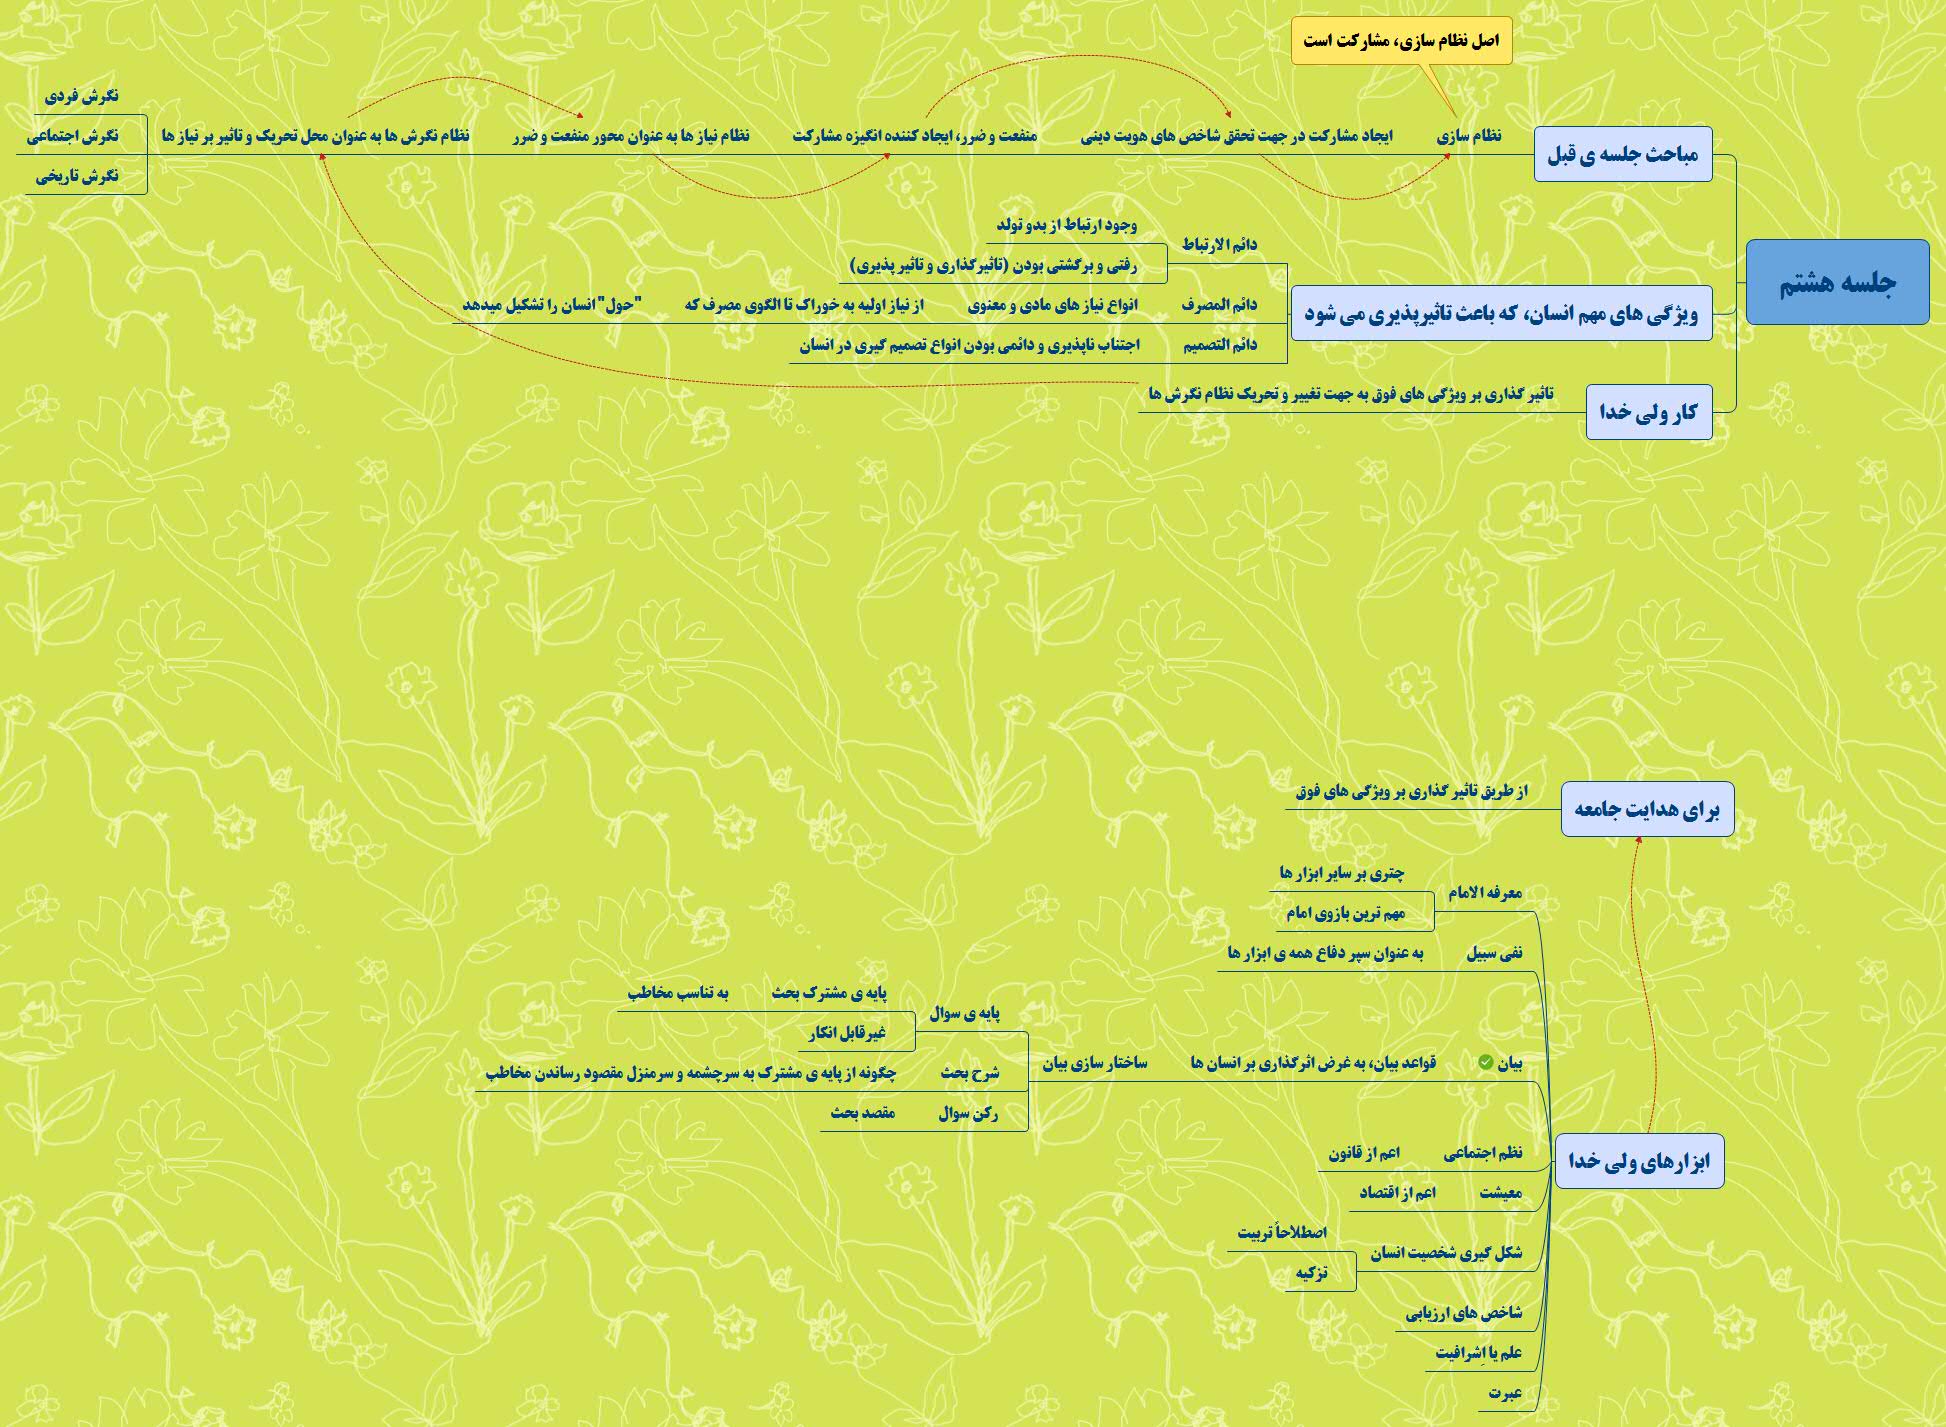 نقشه ذهنی جلسه هشتم دوره جهت حرکت انقلاب اسلامی